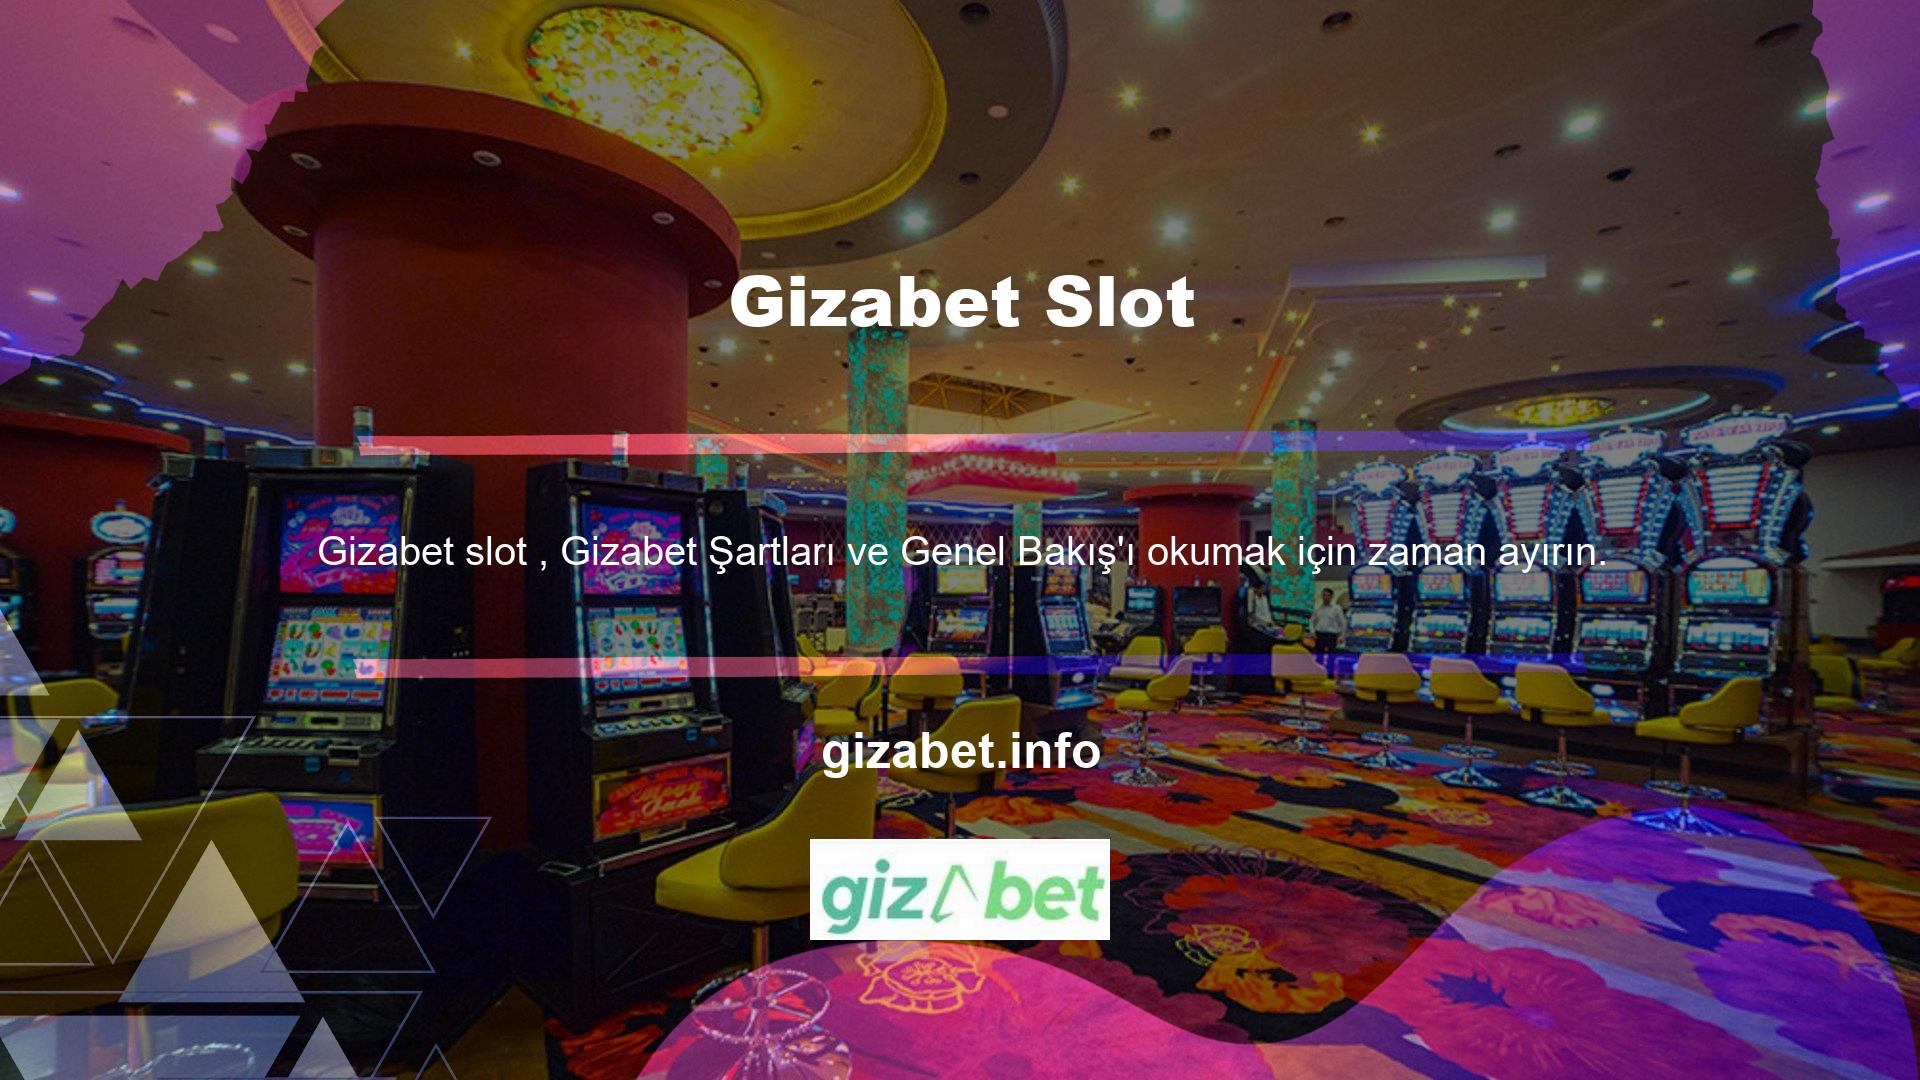 Çevrimiçi casinolar her şeyden önce kârlı bir iştir